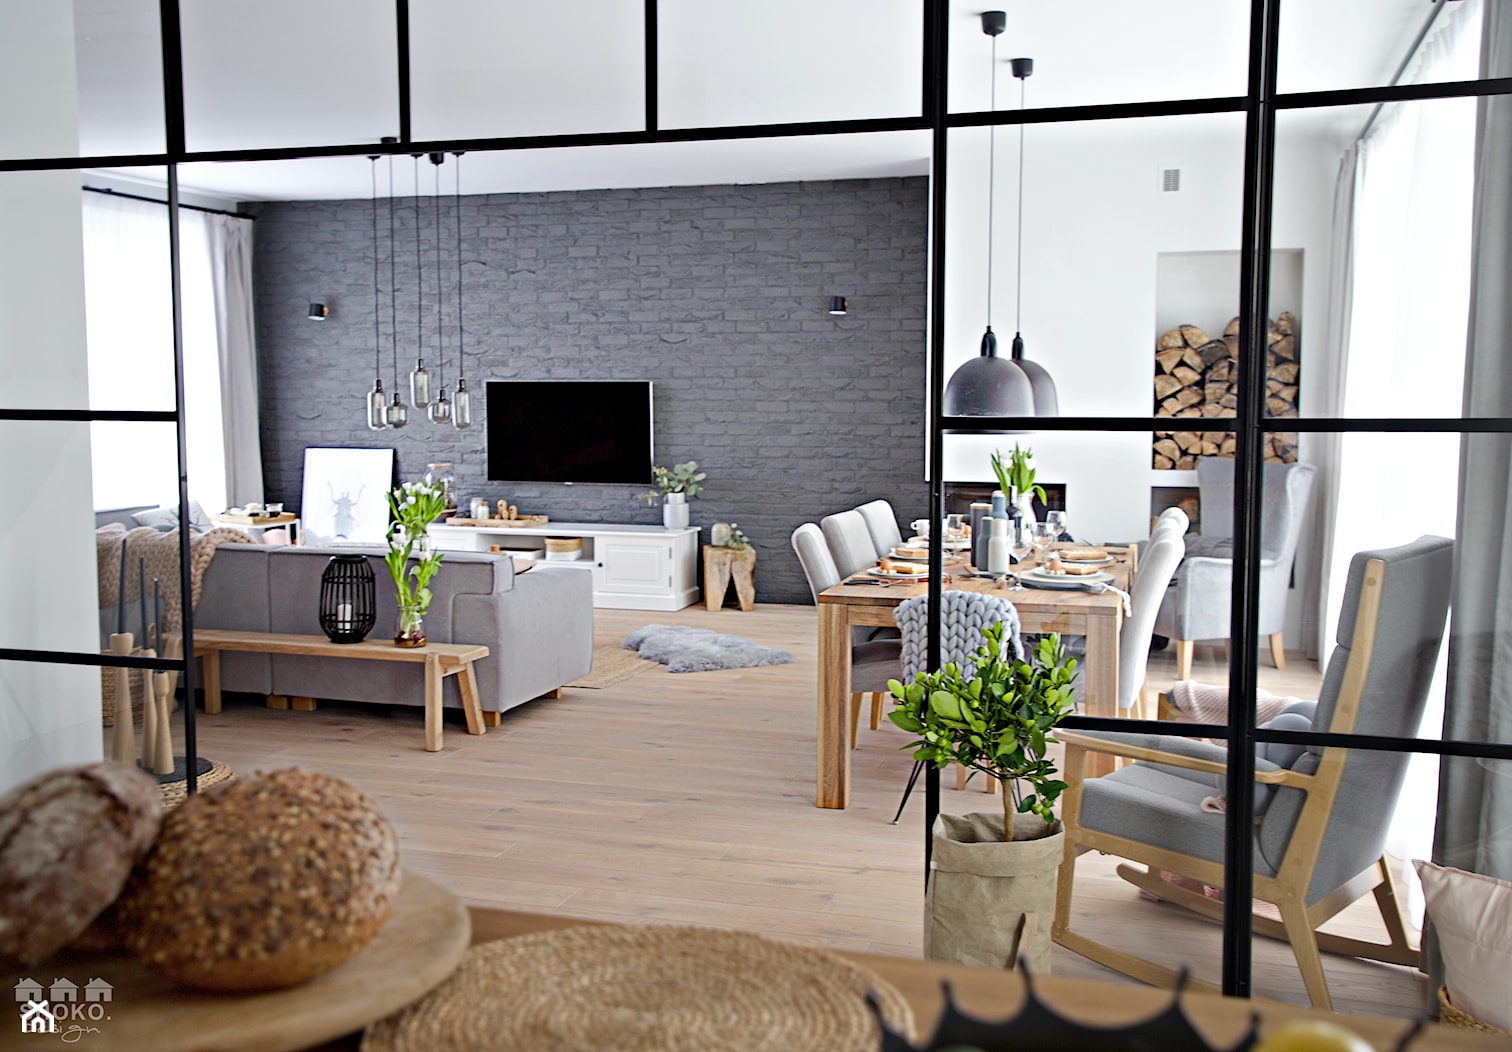 100% organic - Duży biały szary salon z jadalnią, styl skandynawski - zdjęcie od SHOKO.design - Homebook